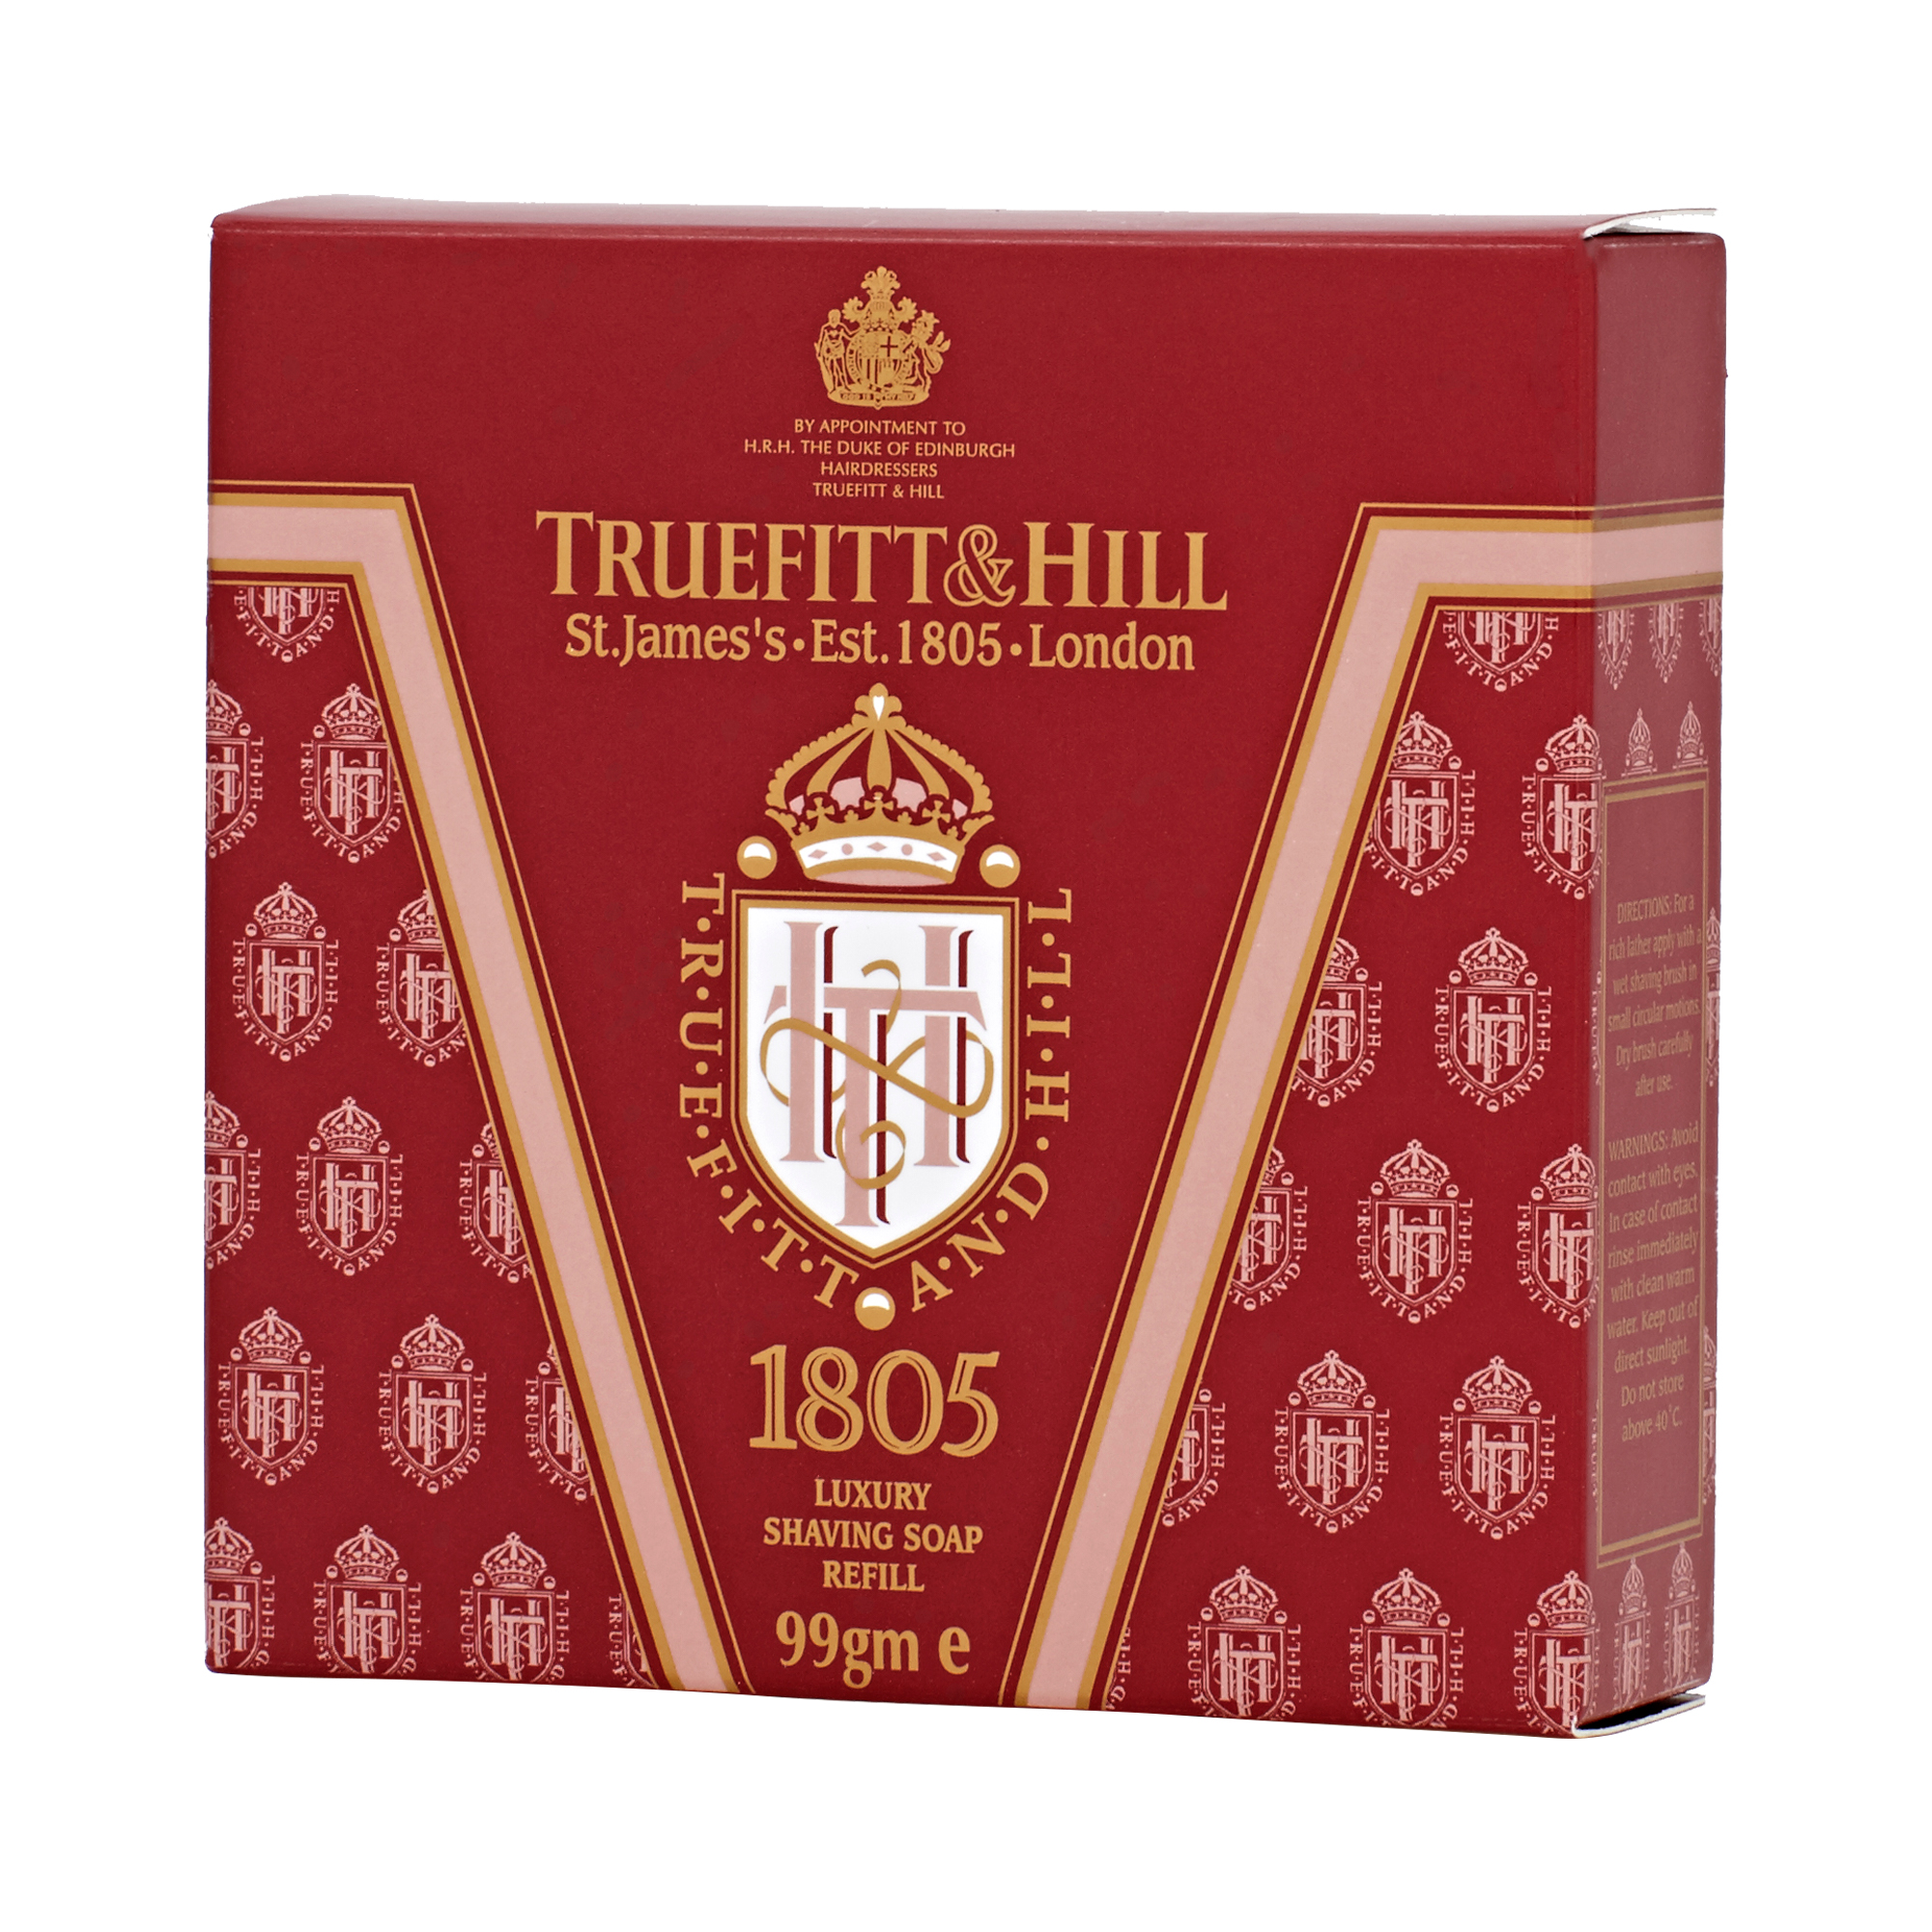 Truefitt & Hill - 1805 Shaving Soap Refill - Nachfüllpack für Holztiegel